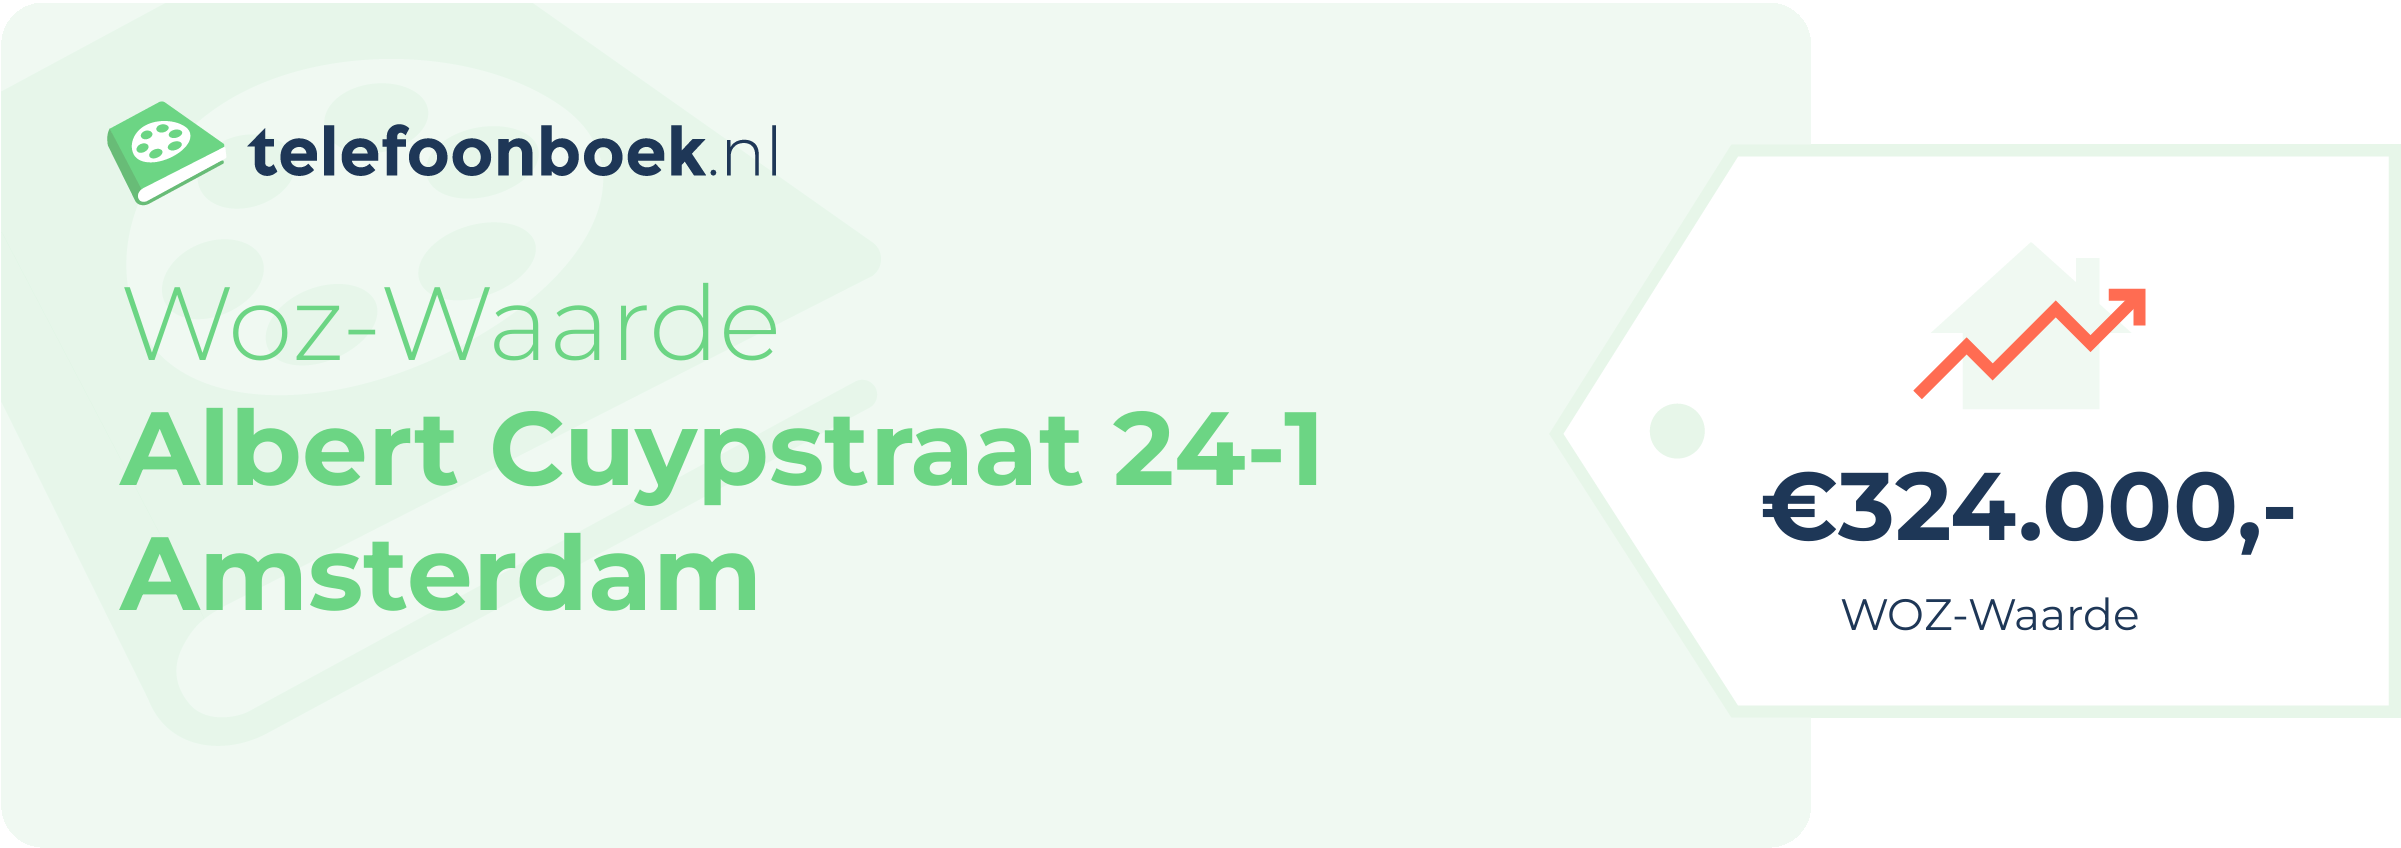 WOZ-waarde Albert Cuypstraat 24-1 Amsterdam